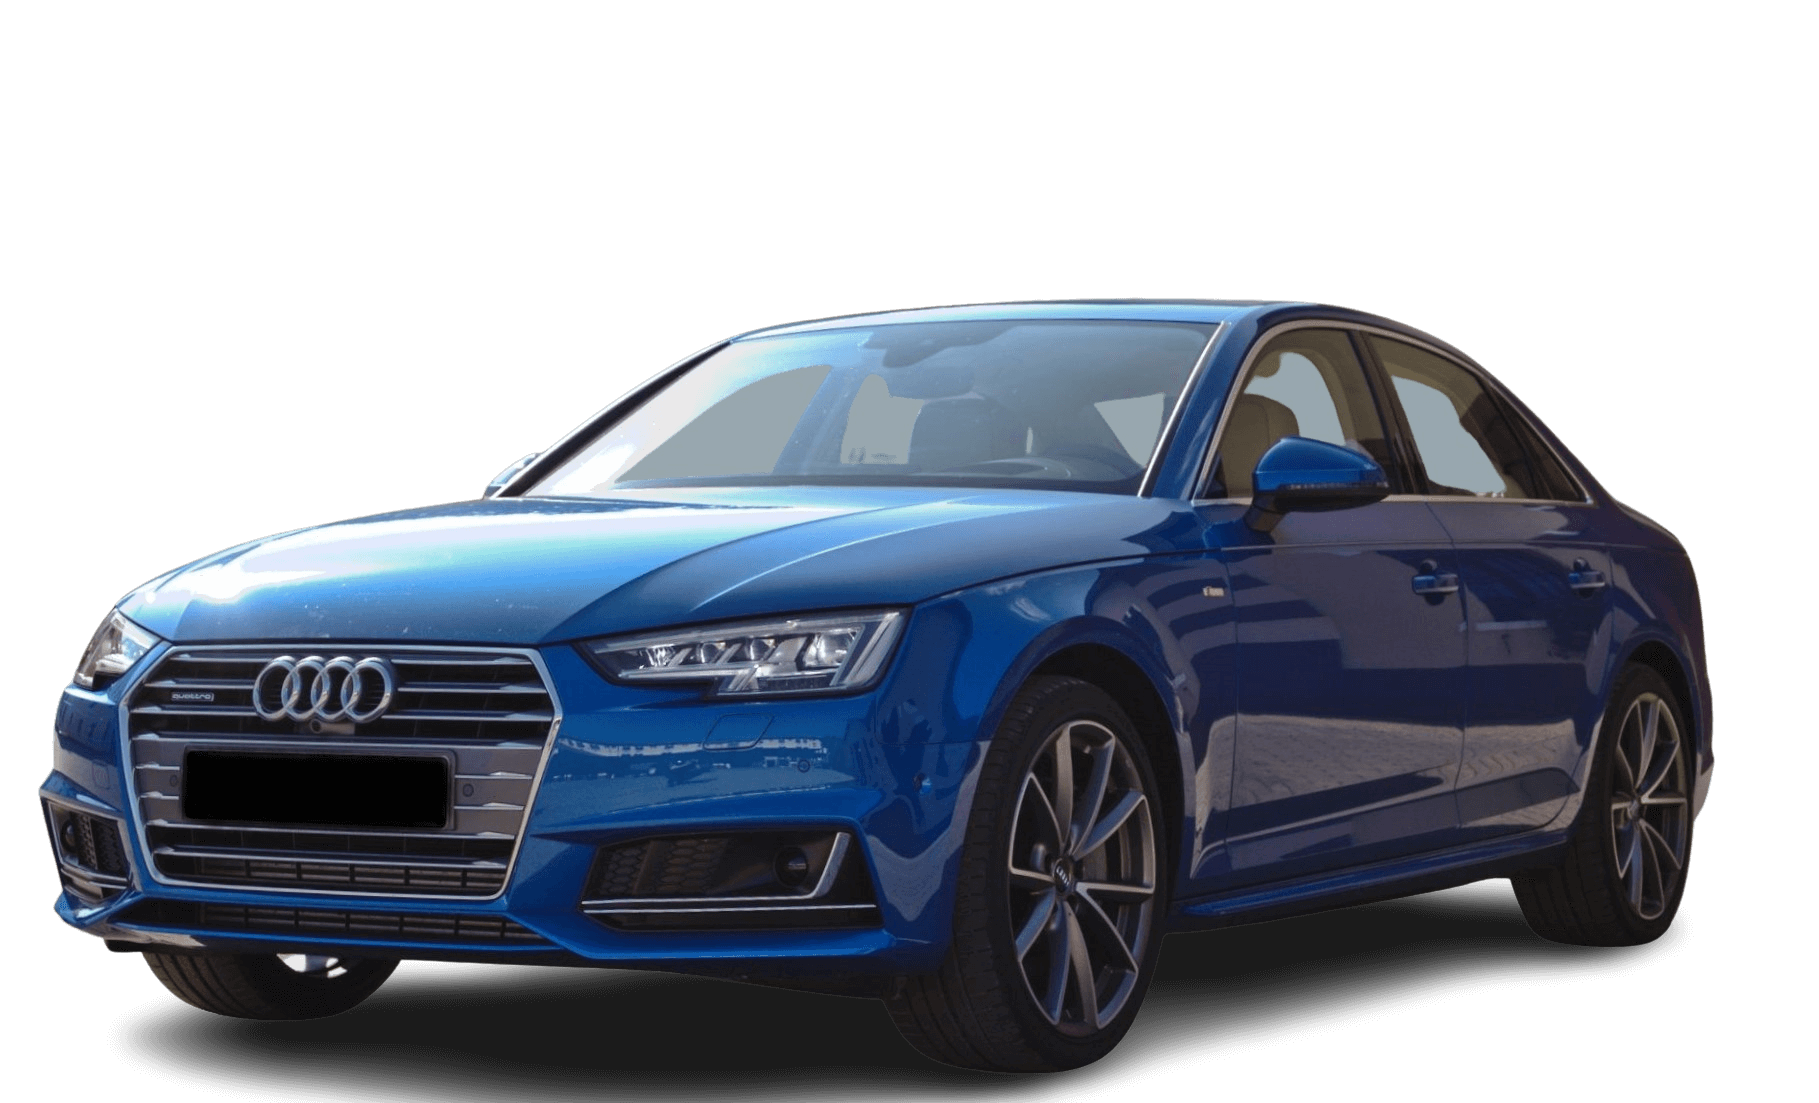 2015-Audi-A4-B9-2.0-TFSI-quattro-185-kW-S-line-Arablau-Kristalleffekt-Vorderansicht